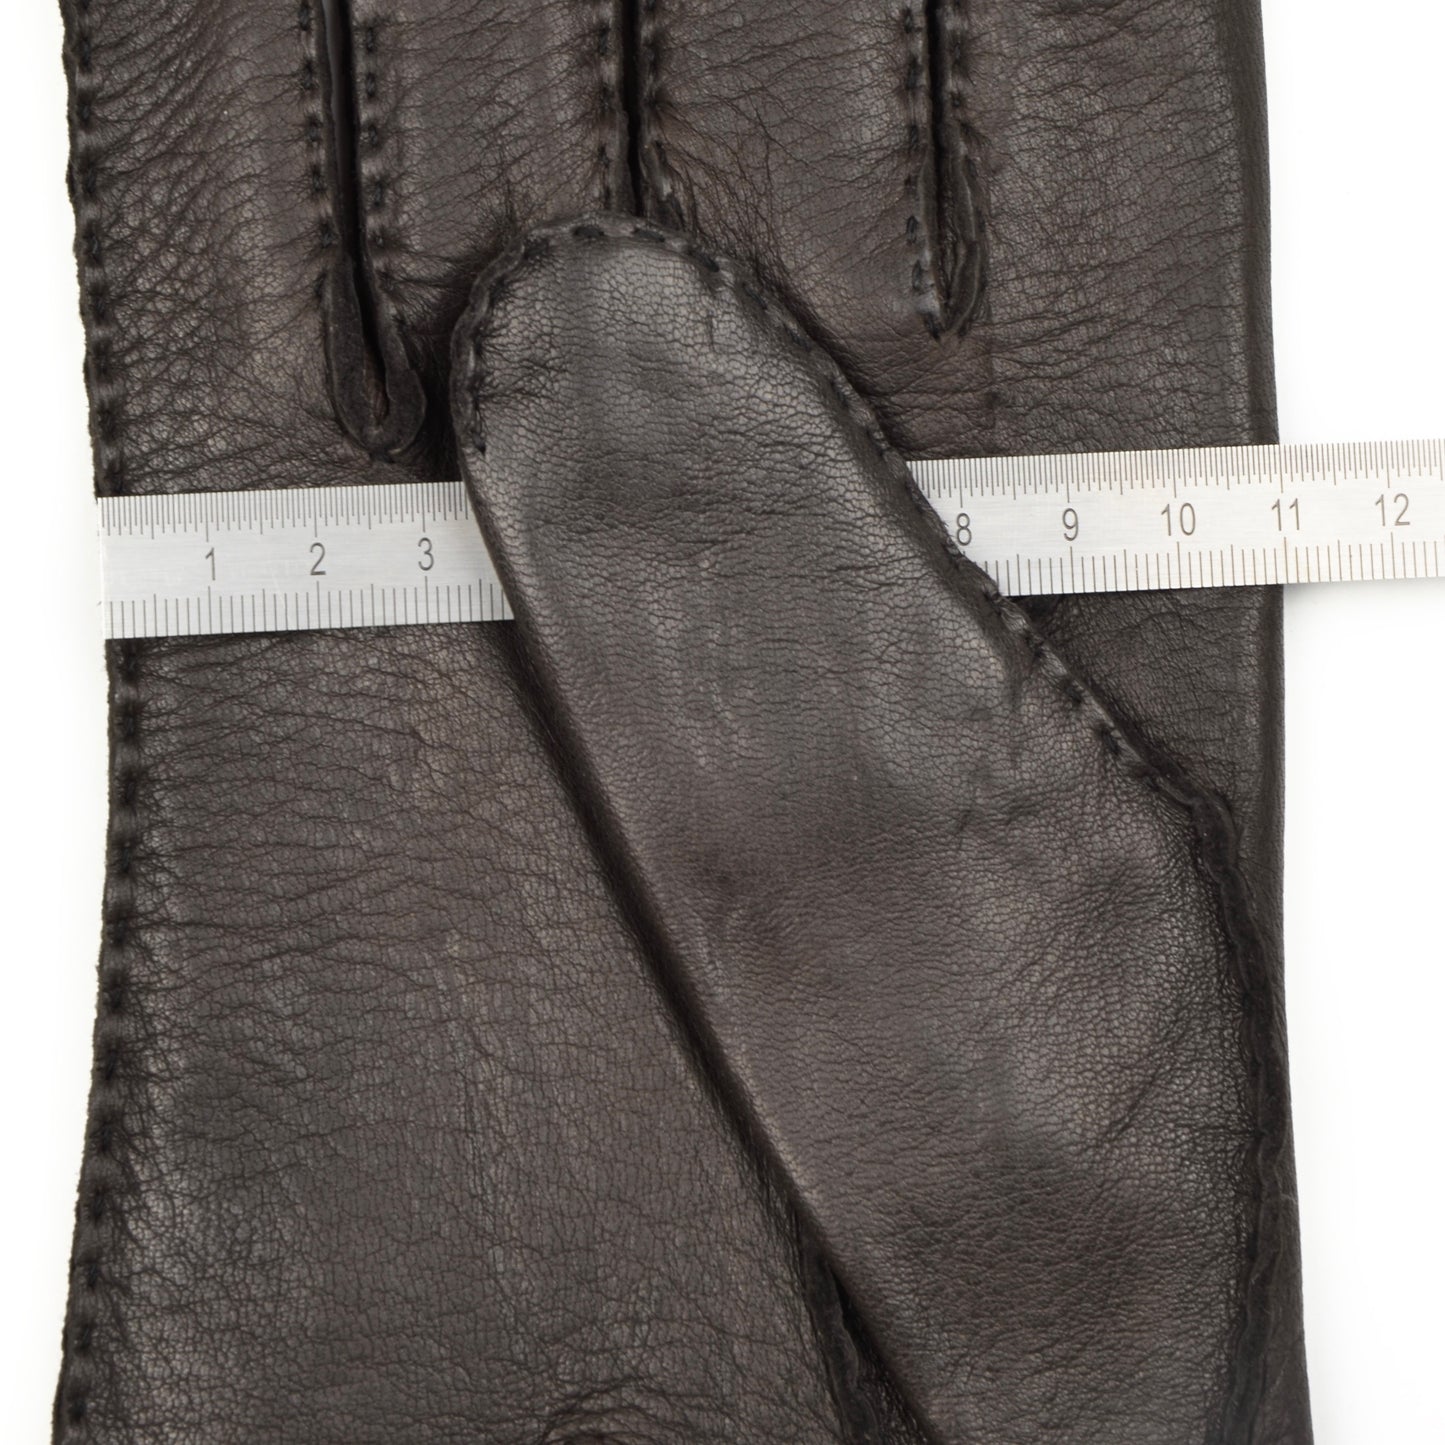 Gefütterte Hirschlederhandschuhe Größe 9 1/2 - Dunkelbraun